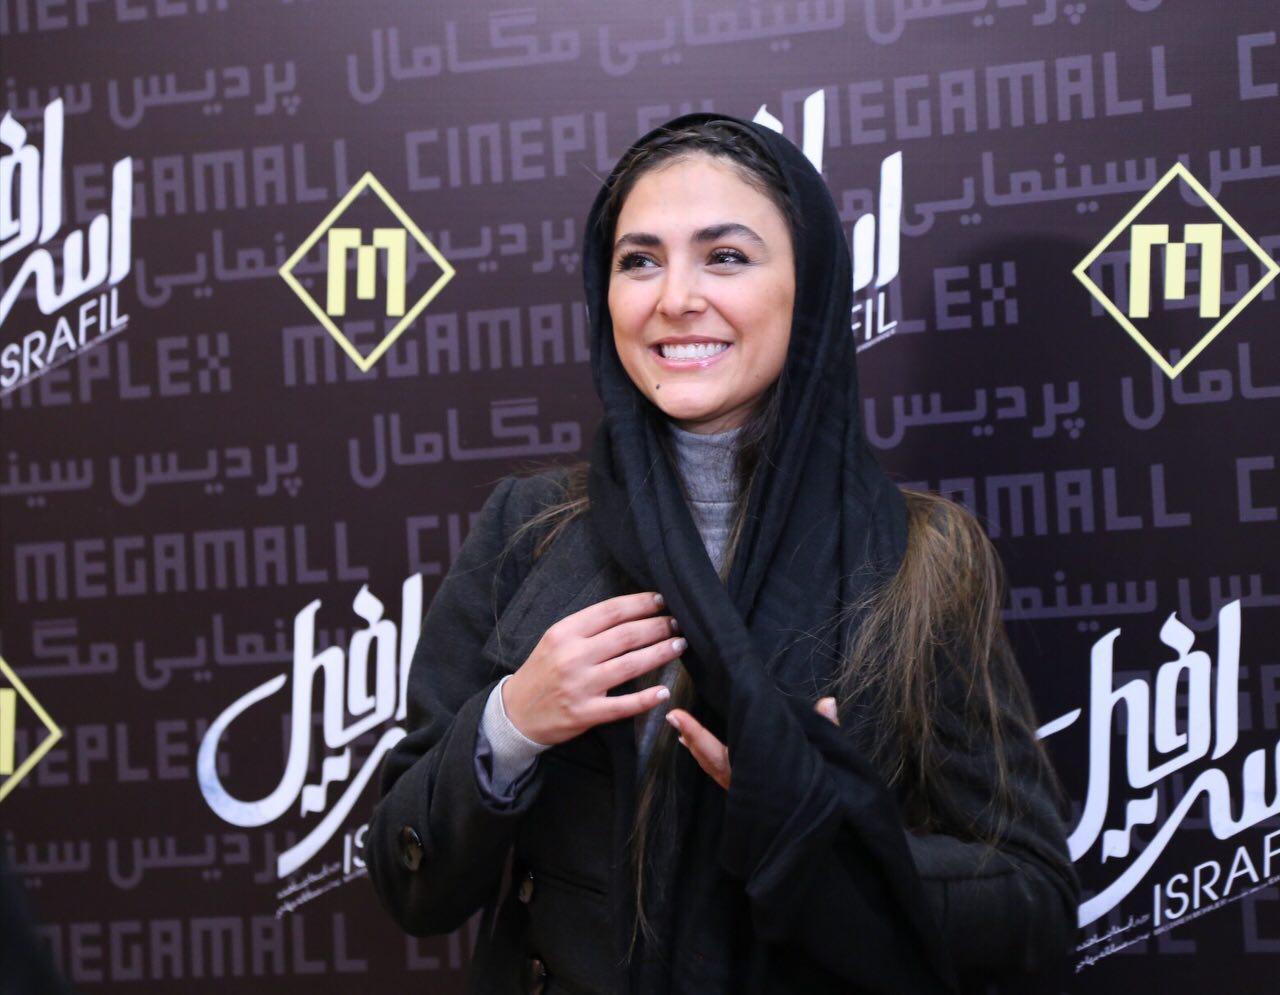 هدی زین‌العابدین در اکران افتتاحیه فیلم سینمایی اسرافیل